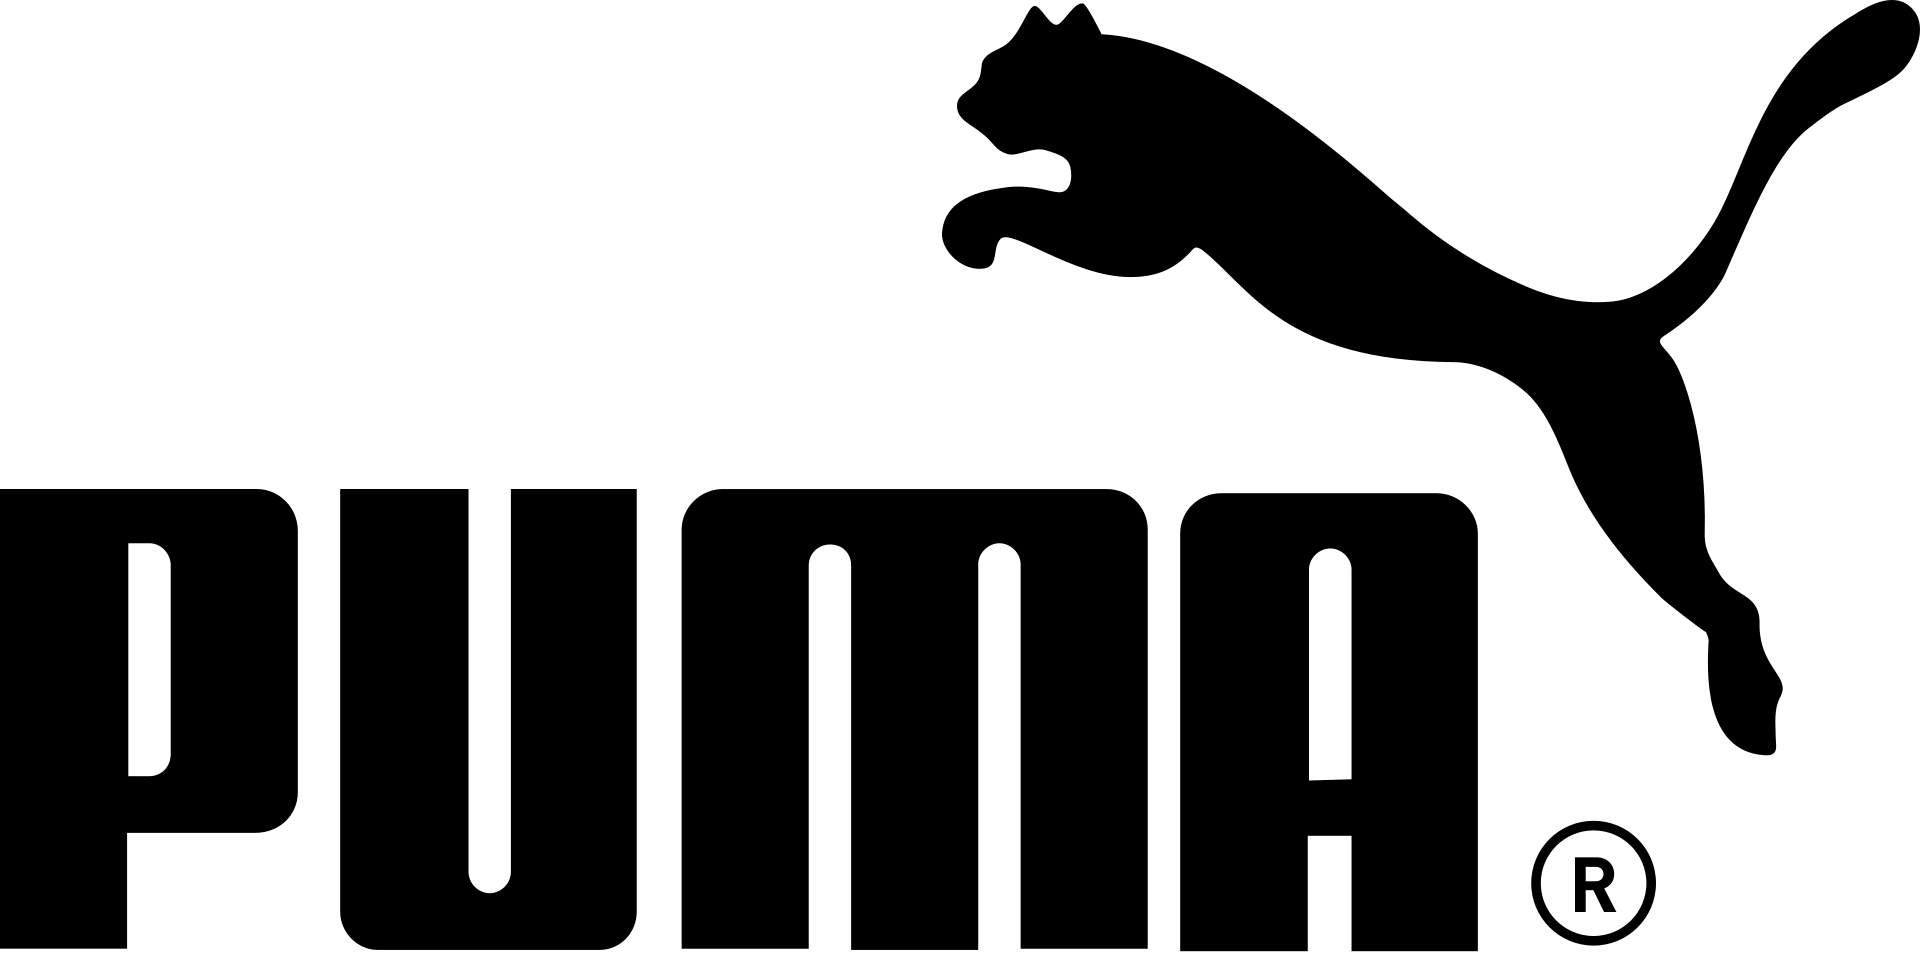 Puma logo black